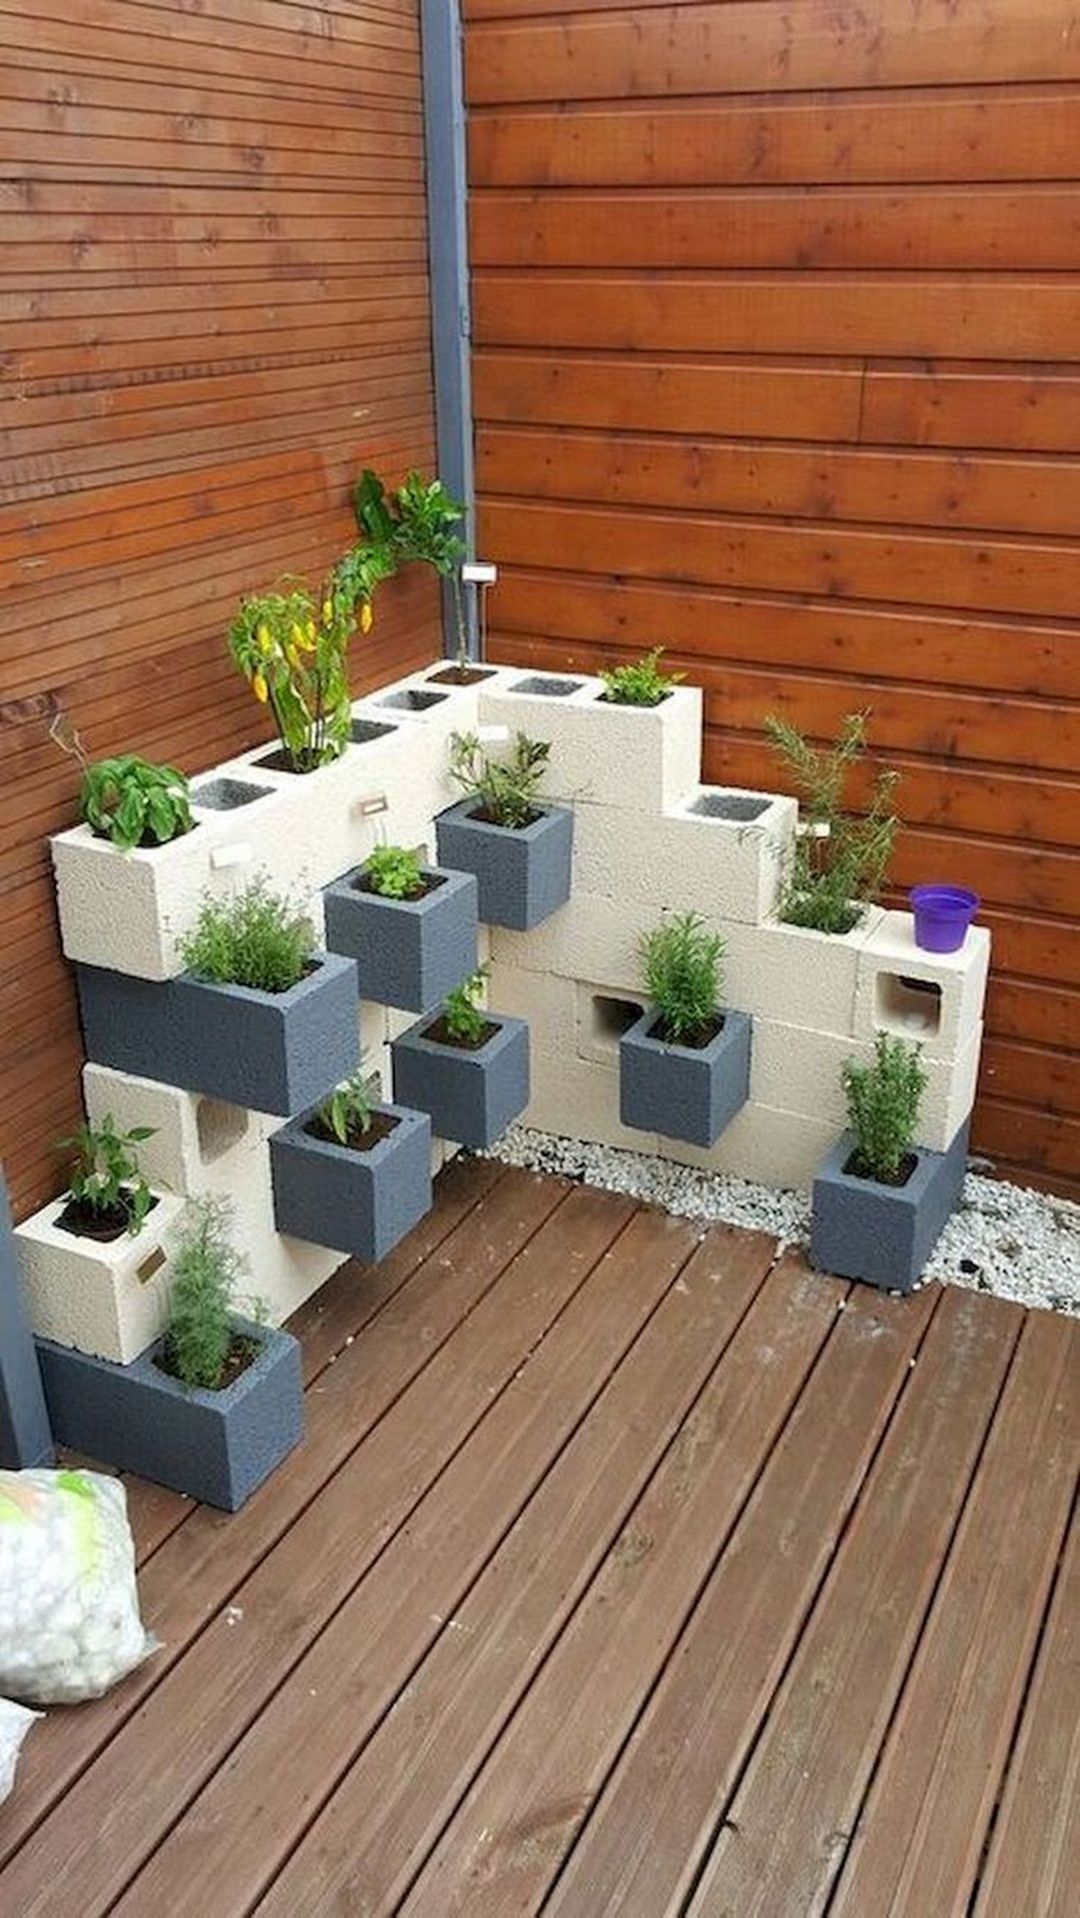 10+ Unique DIY Cinder Block Garden Ideas For Home Look Beautiful - 10+ Unique DIY Cinder Block Garden Ideas For Home Look Beautiful -   17 diy Garden pot ideas